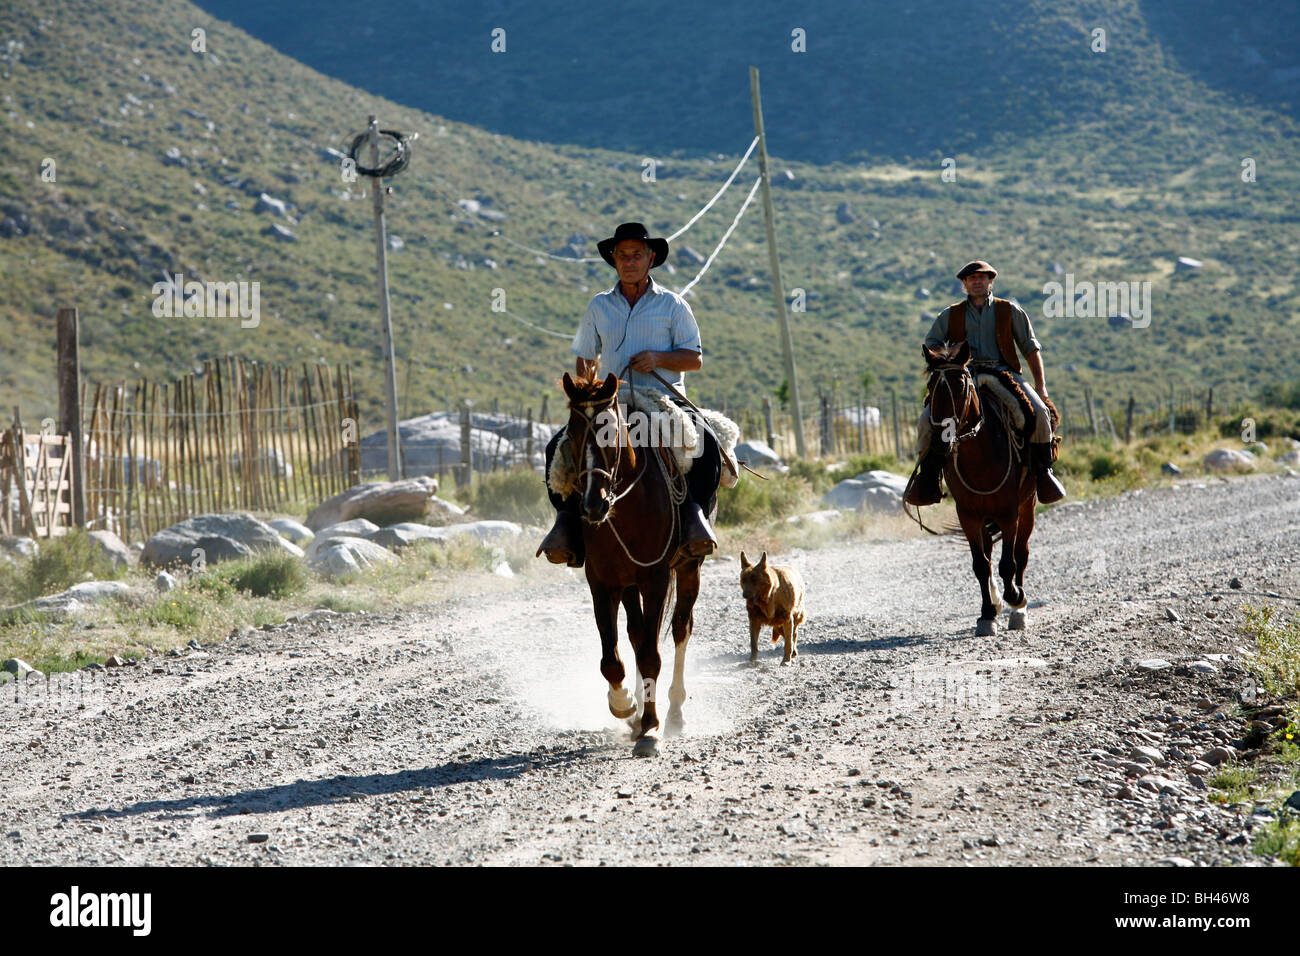 Gauchos riding horses at Valle de Uco, Mendoza region, Argentina. Stock Photo